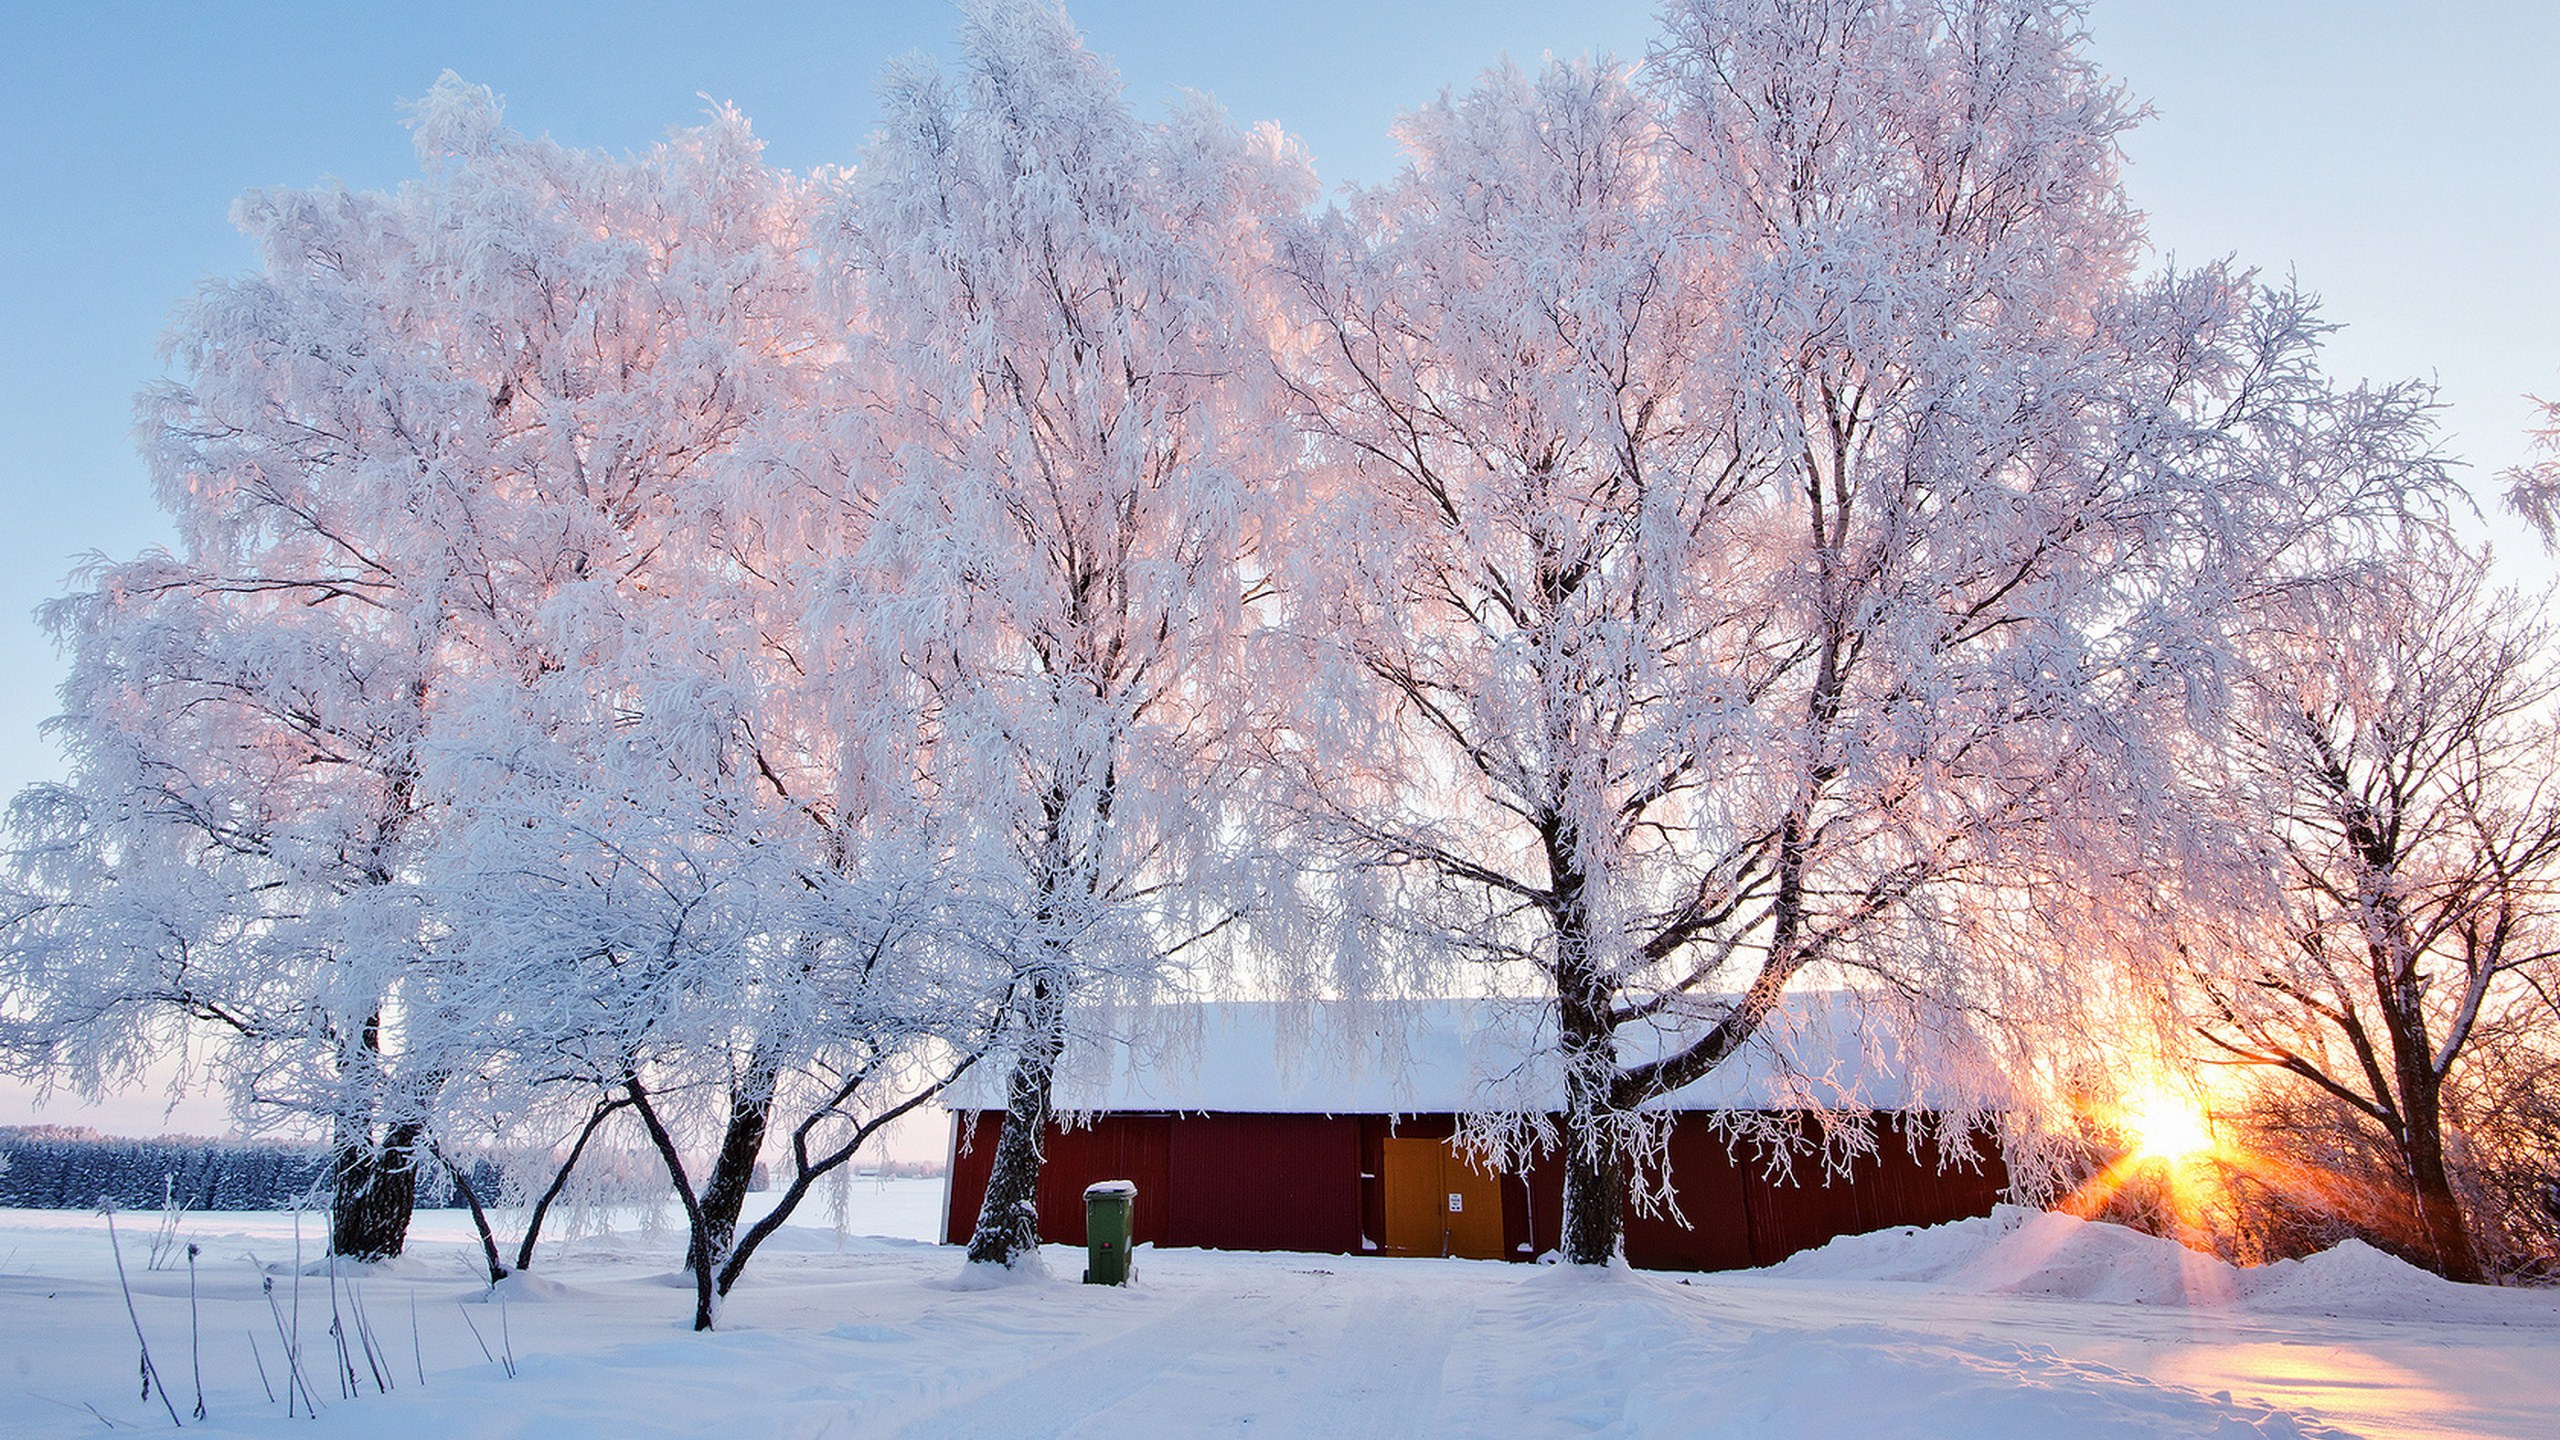 冬天, 冻结, 早上, 冬季阳光, 日落 壁纸 2560x1440 允许